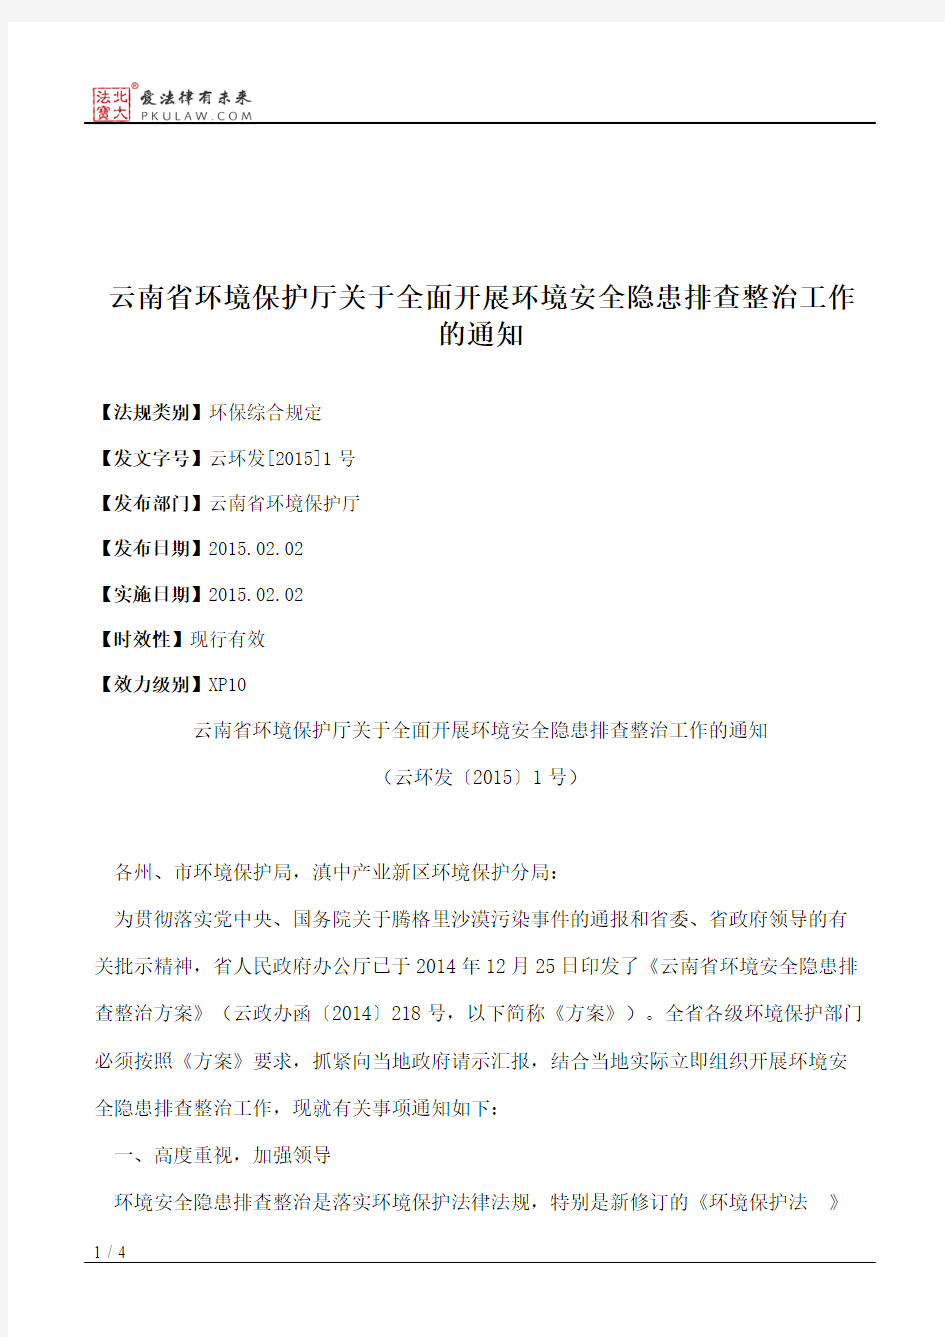 云南省环境保护厅关于全面开展环境安全隐患排查整治工作的通知